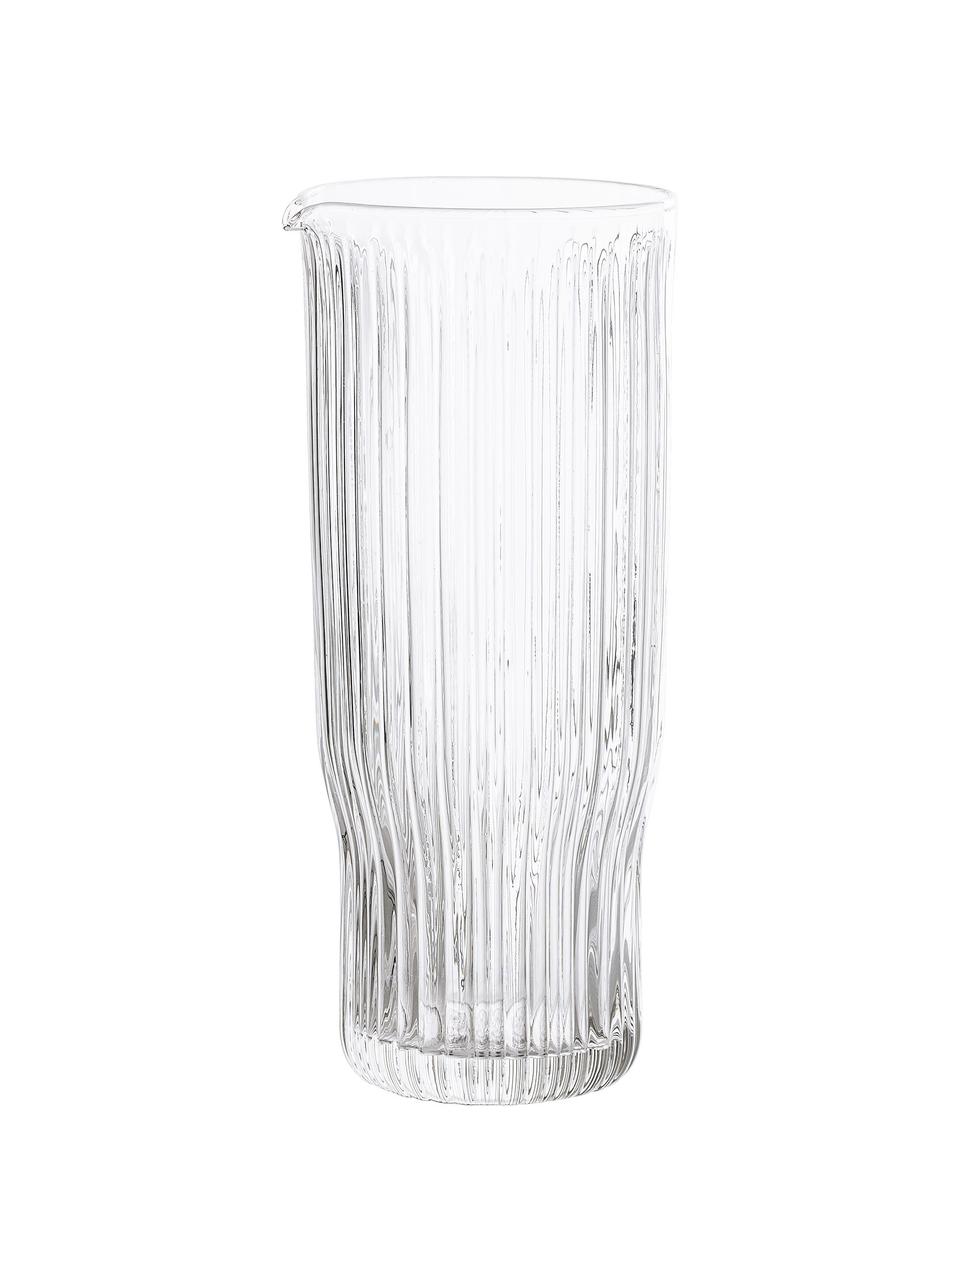 Wasserkaraffe Ronja mit Rillenrelief, 1 L, Glas, Transparent, H 23 cm, 1 L